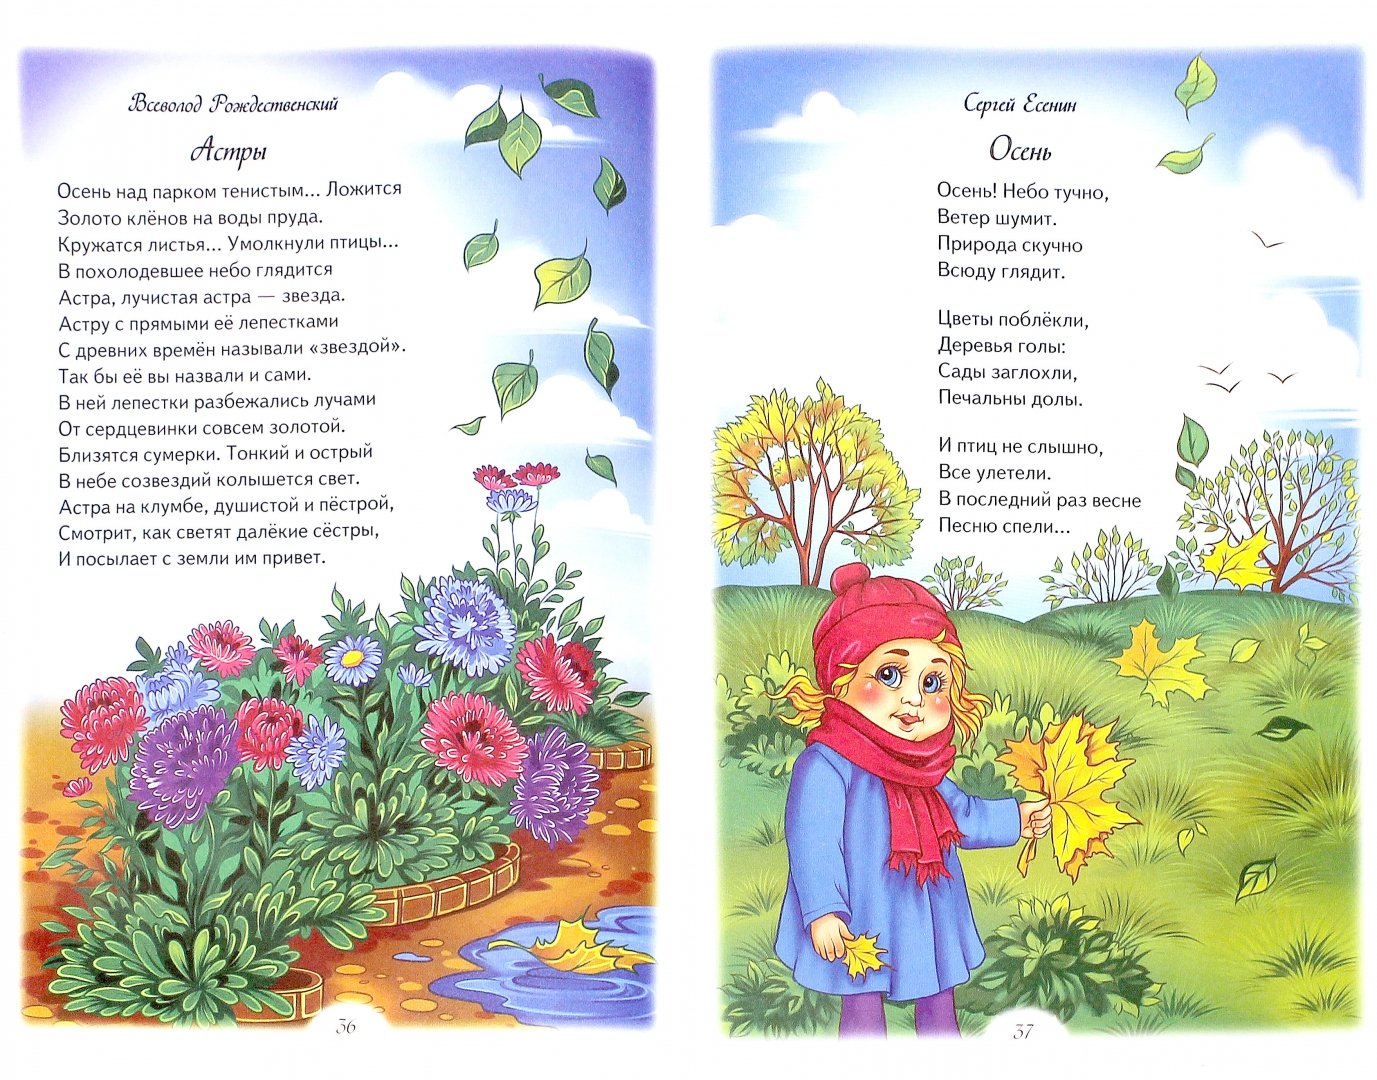 Стихи о природе для детей, школьников русских поэтов классиков: красивые стихотворения читать на рустих